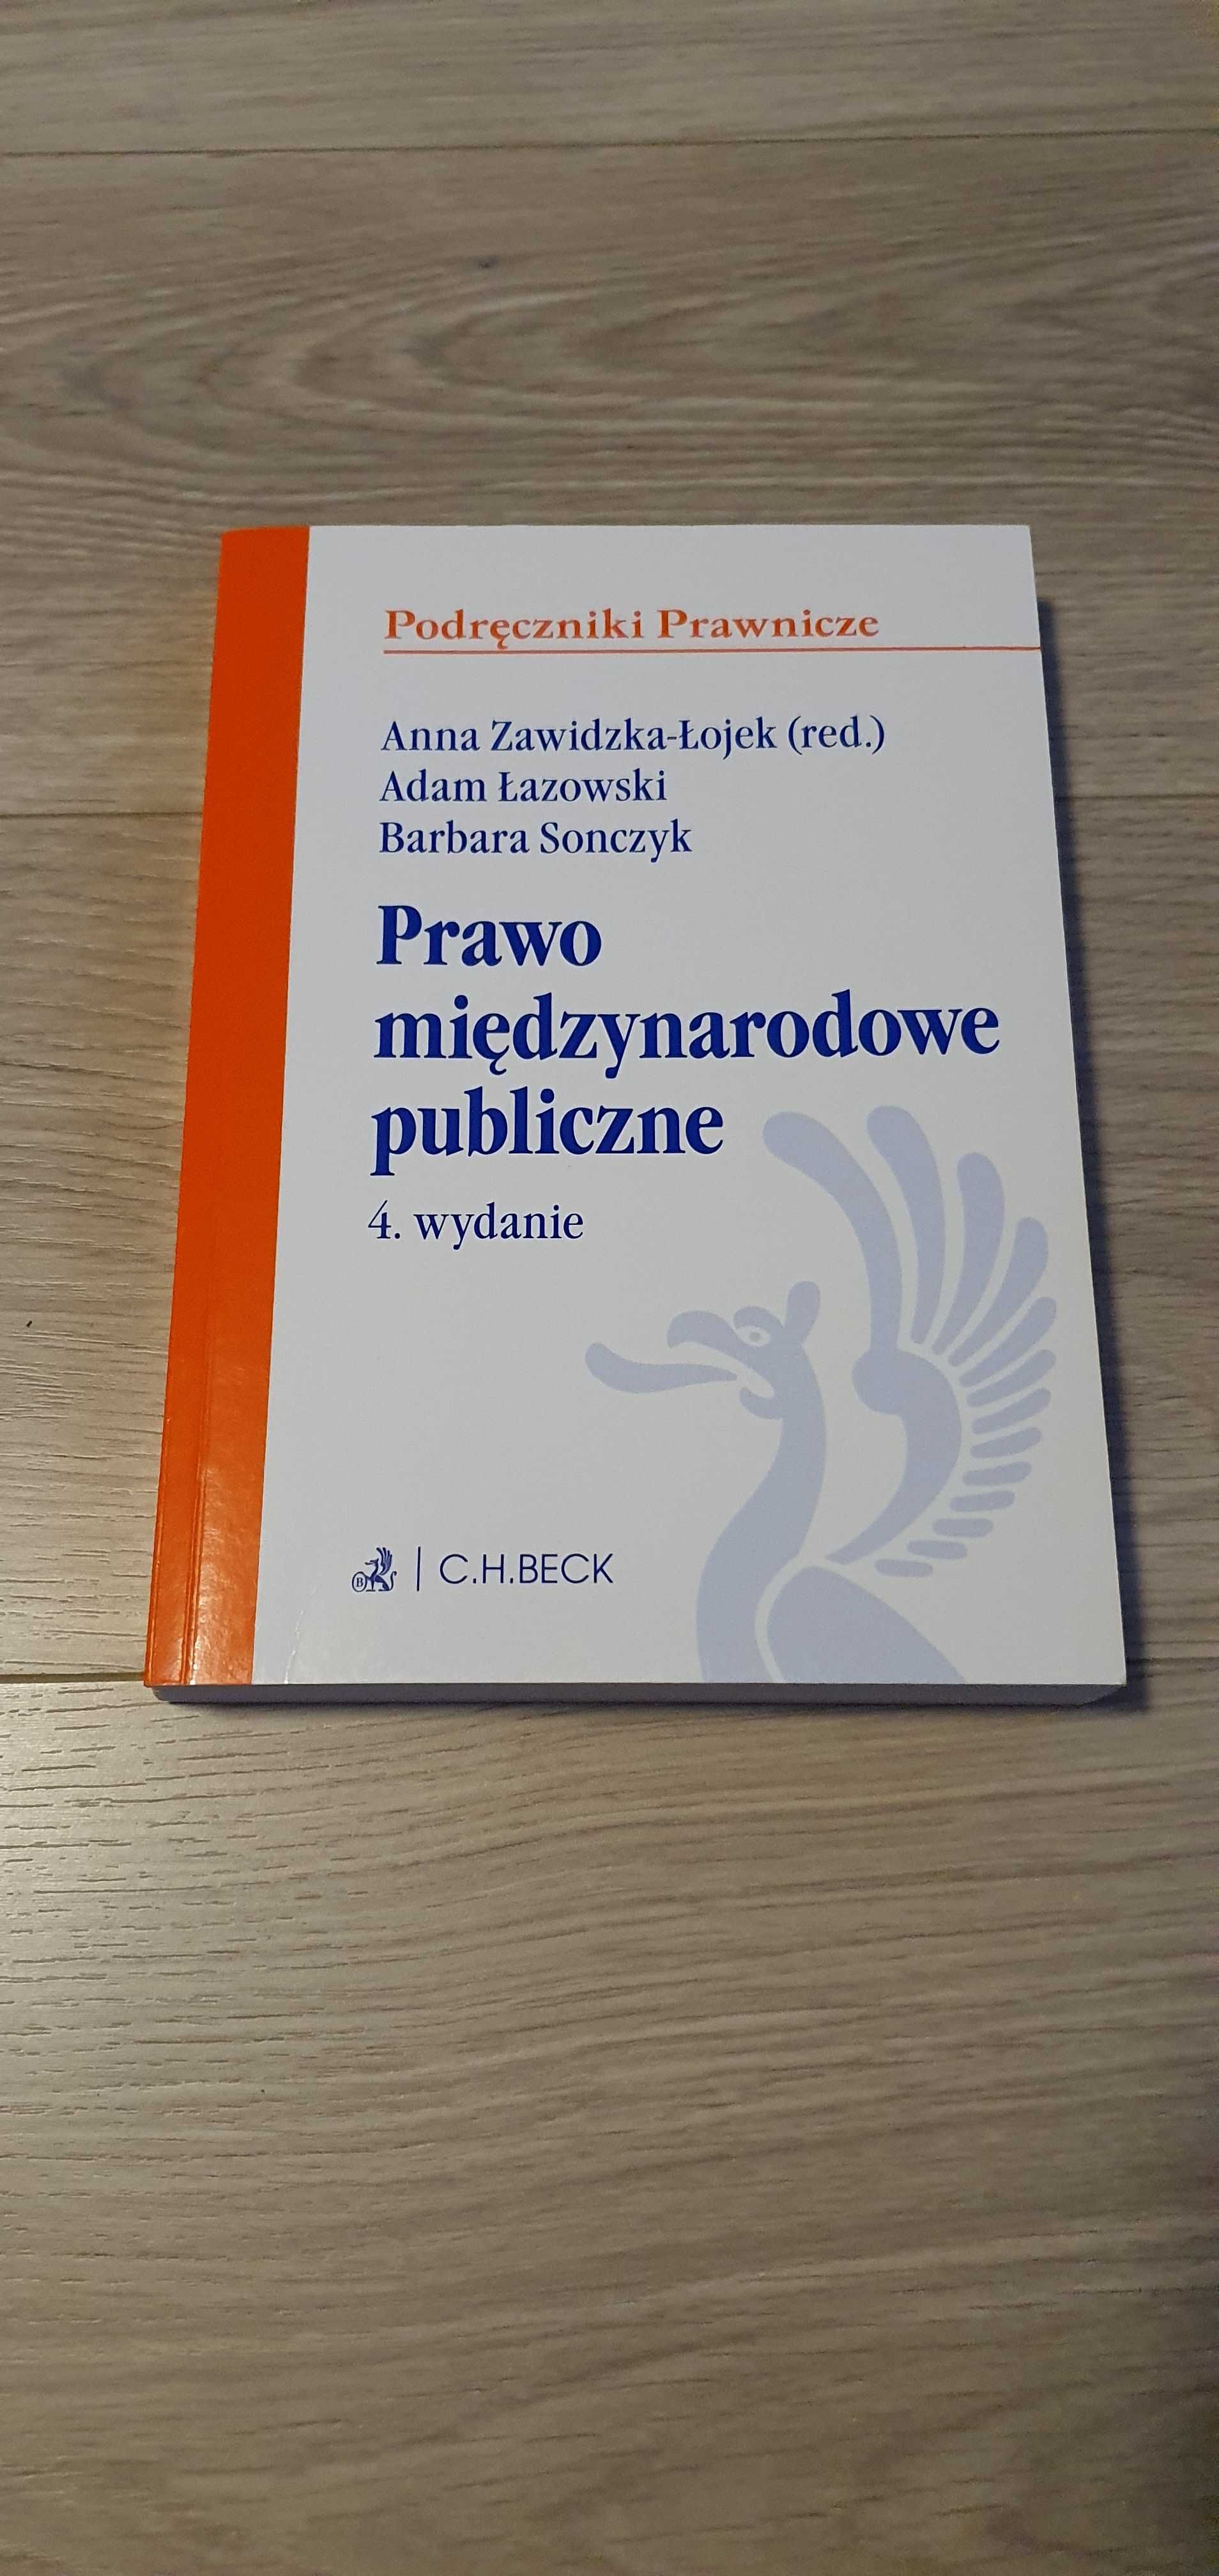 A.Zawidzka-Łojek,A.Łazowski,B.Sonczyk "Prawo międzynarodowe publiczne"